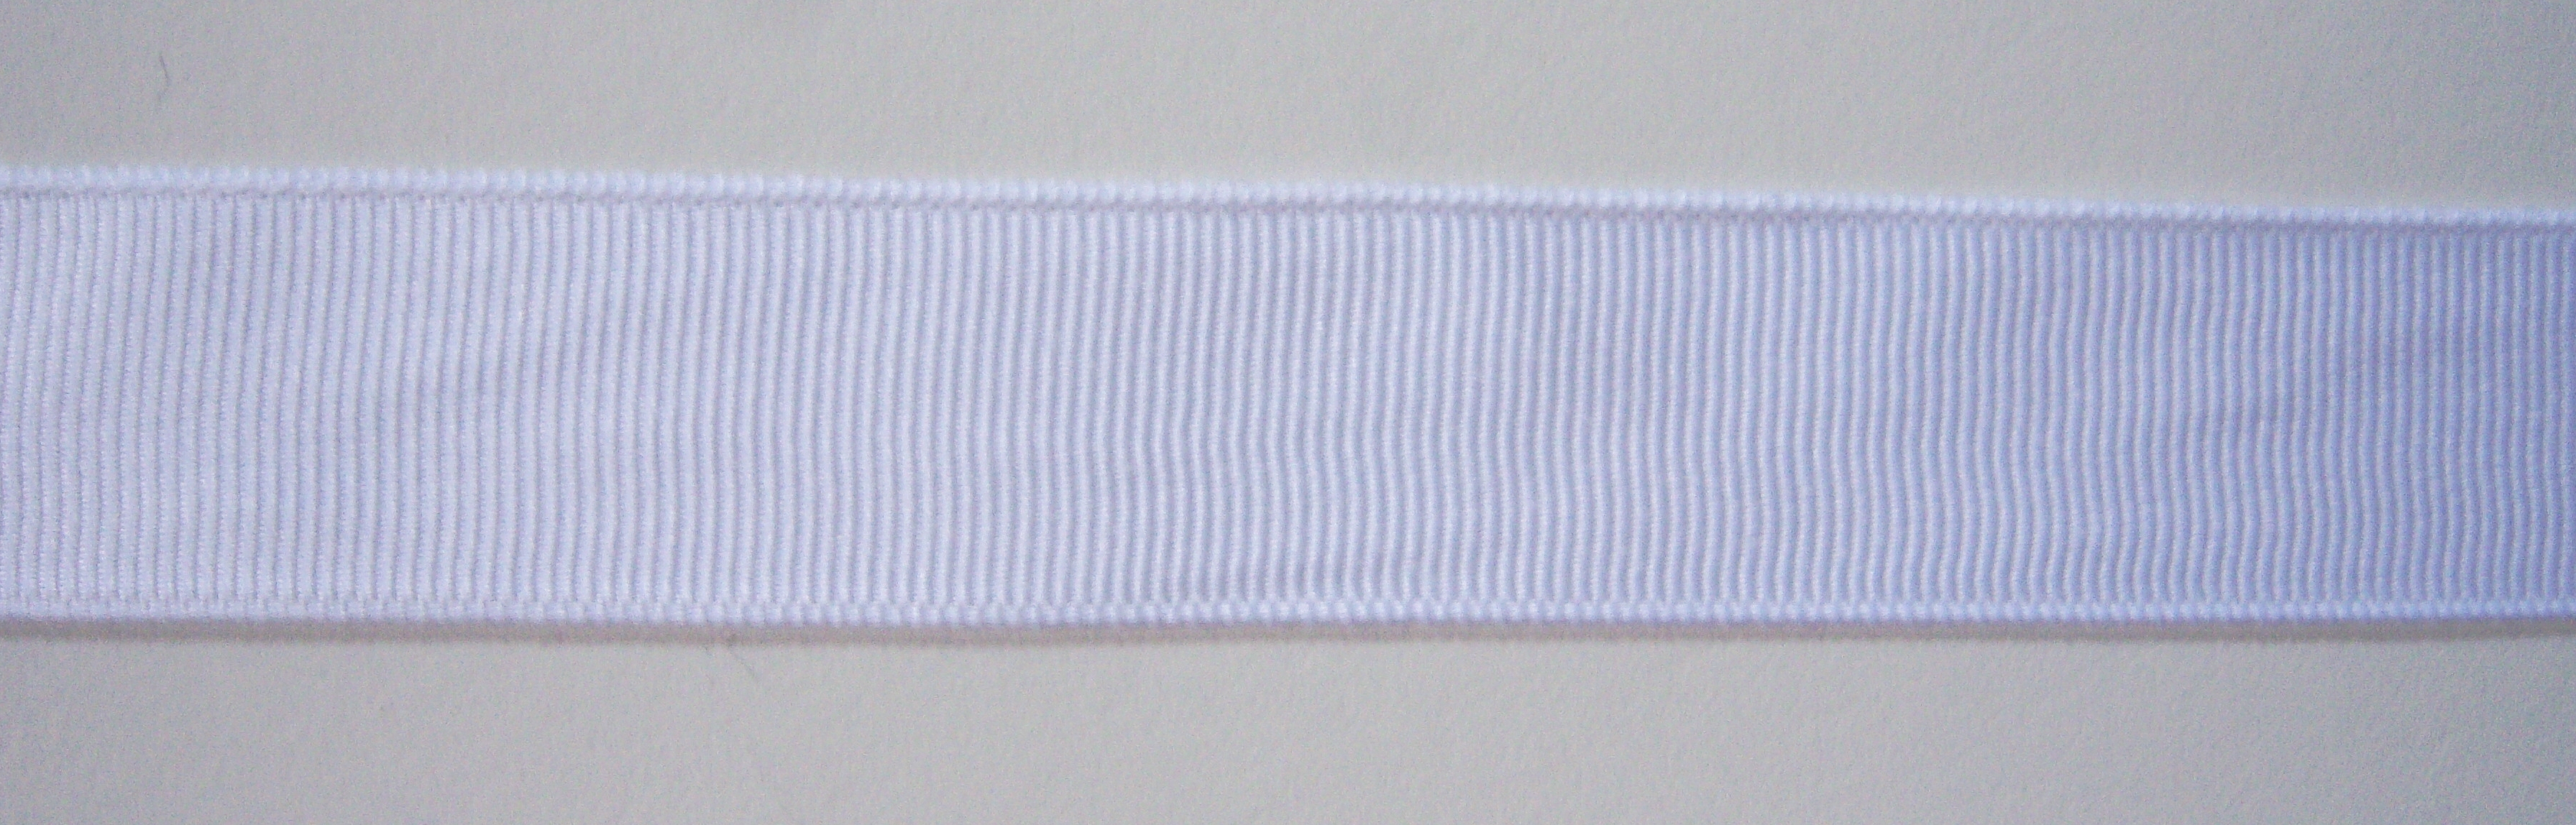 White Grosgrain 7/8" Ribbon